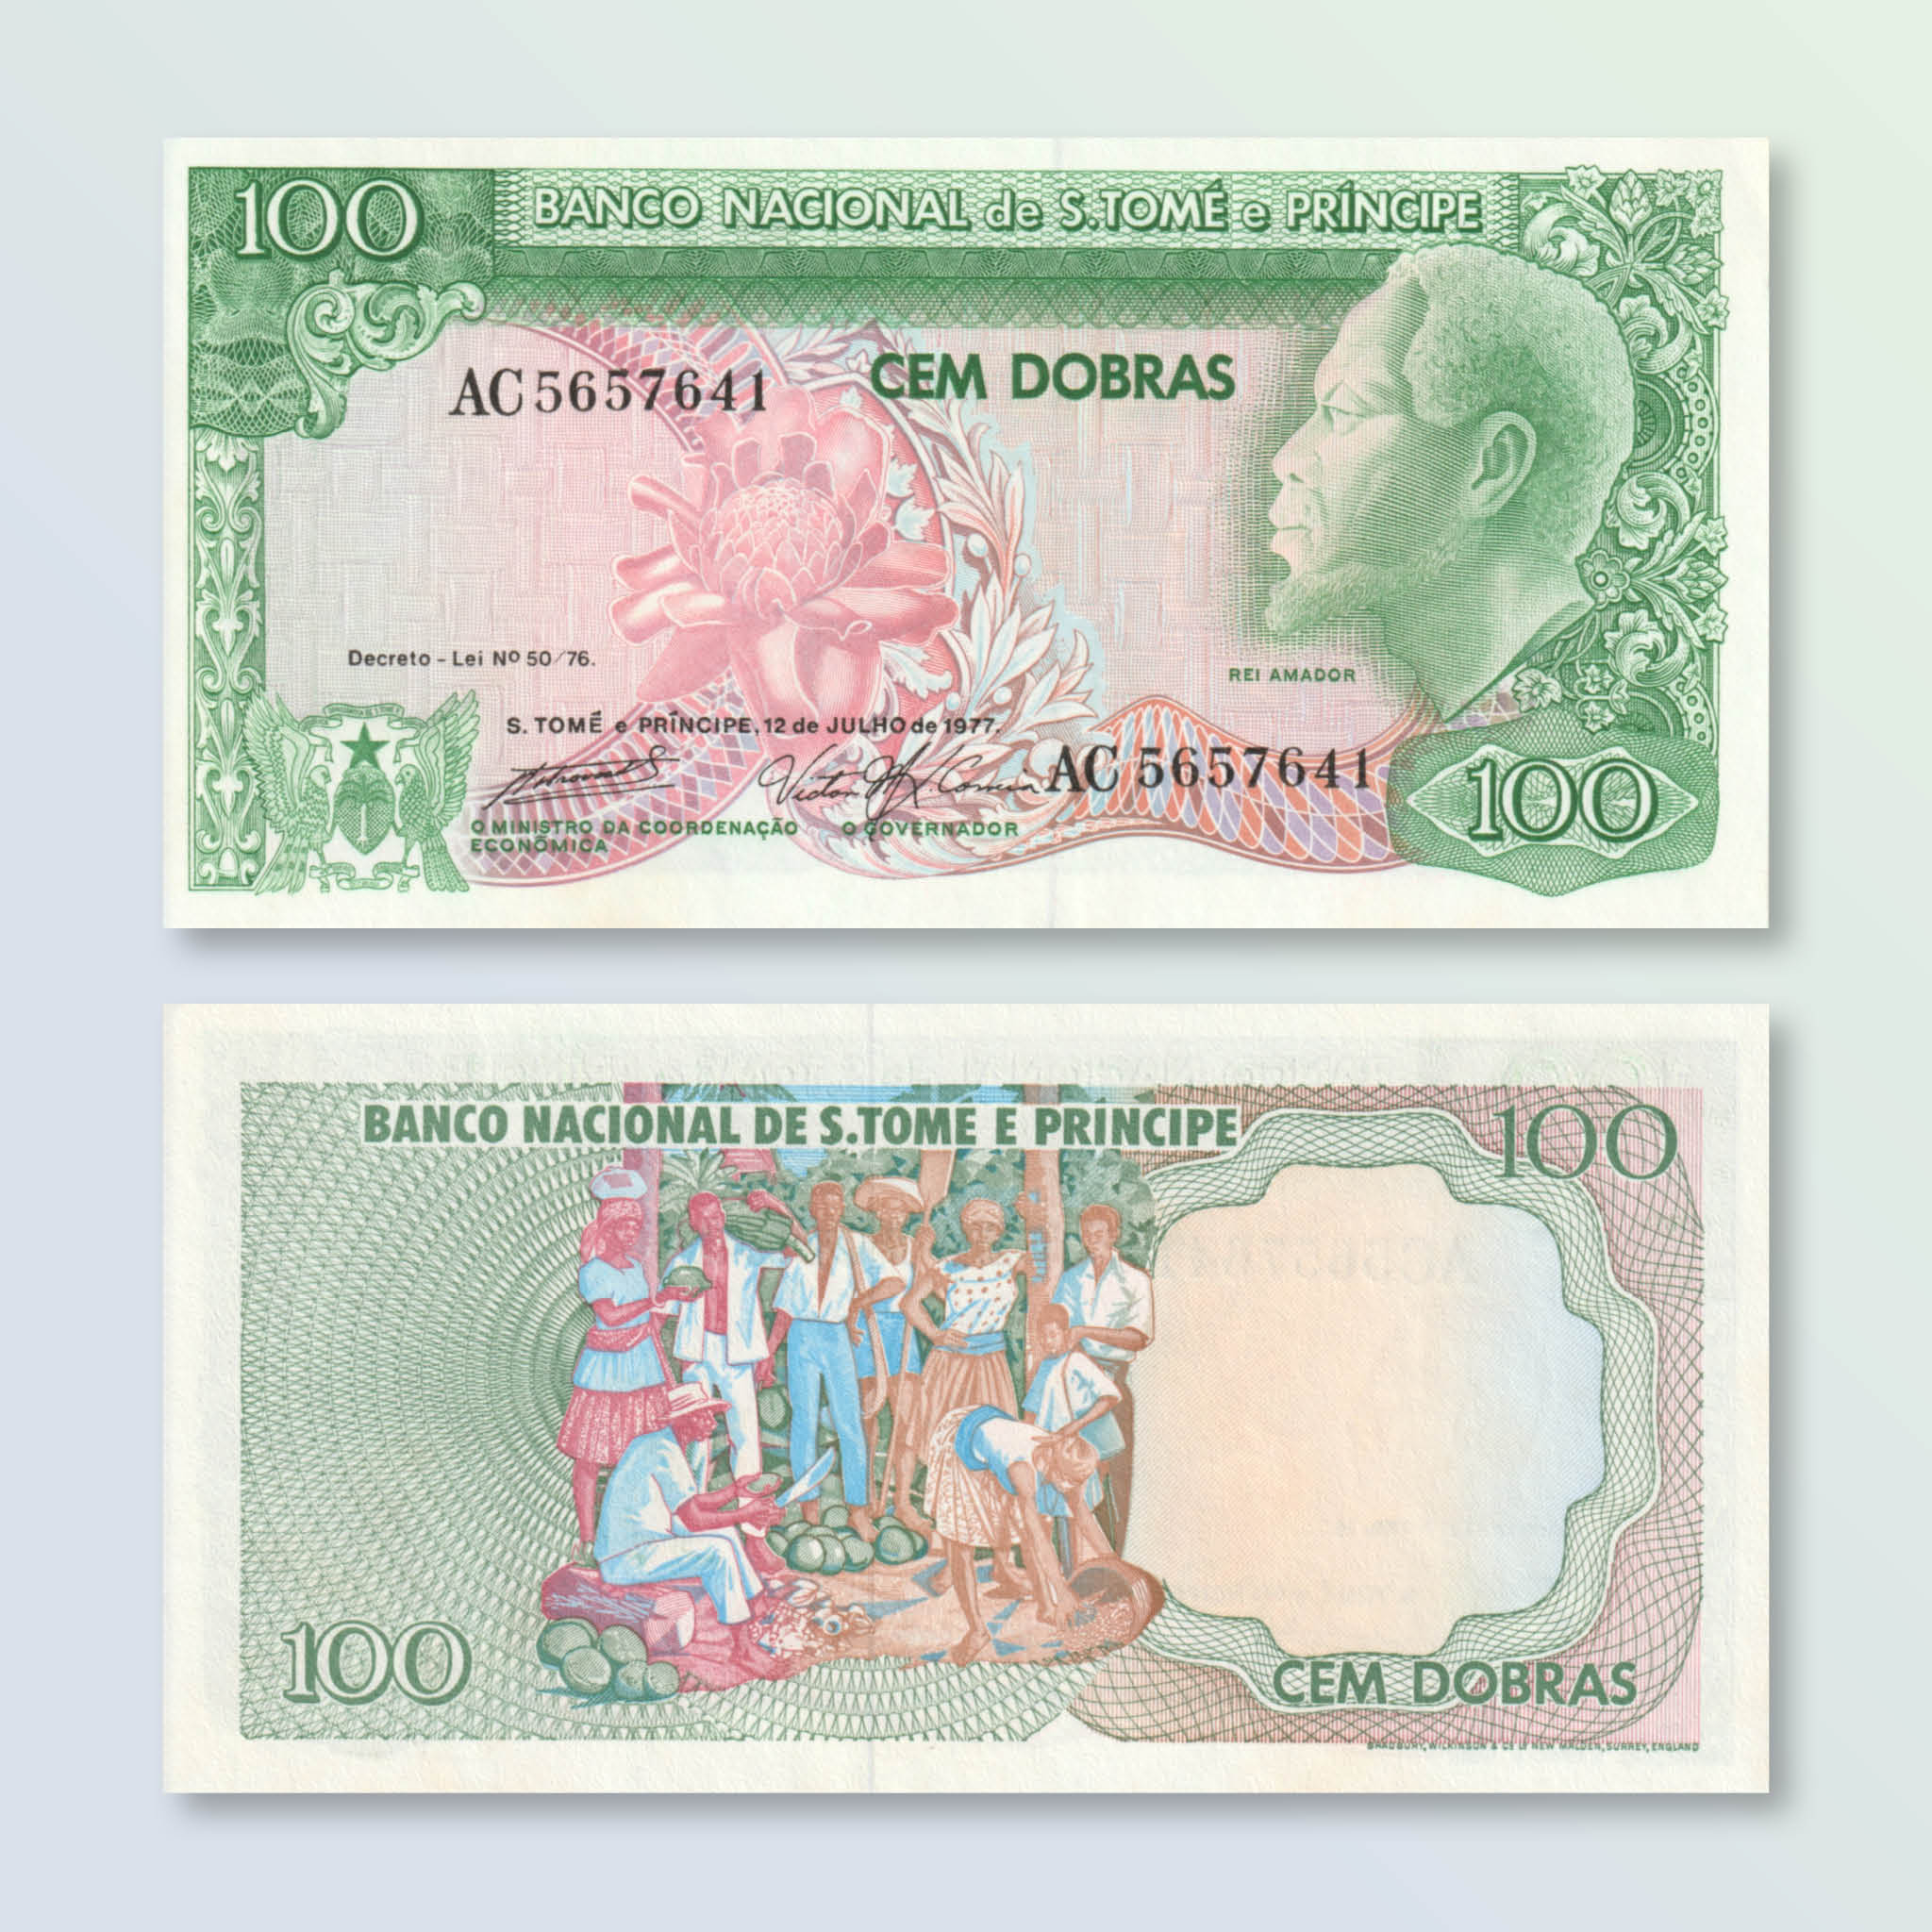 São Tomé & Príncipe 100 Dobras, 1977, B209a, P53a, UNC - Robert's World Money - World Banknotes